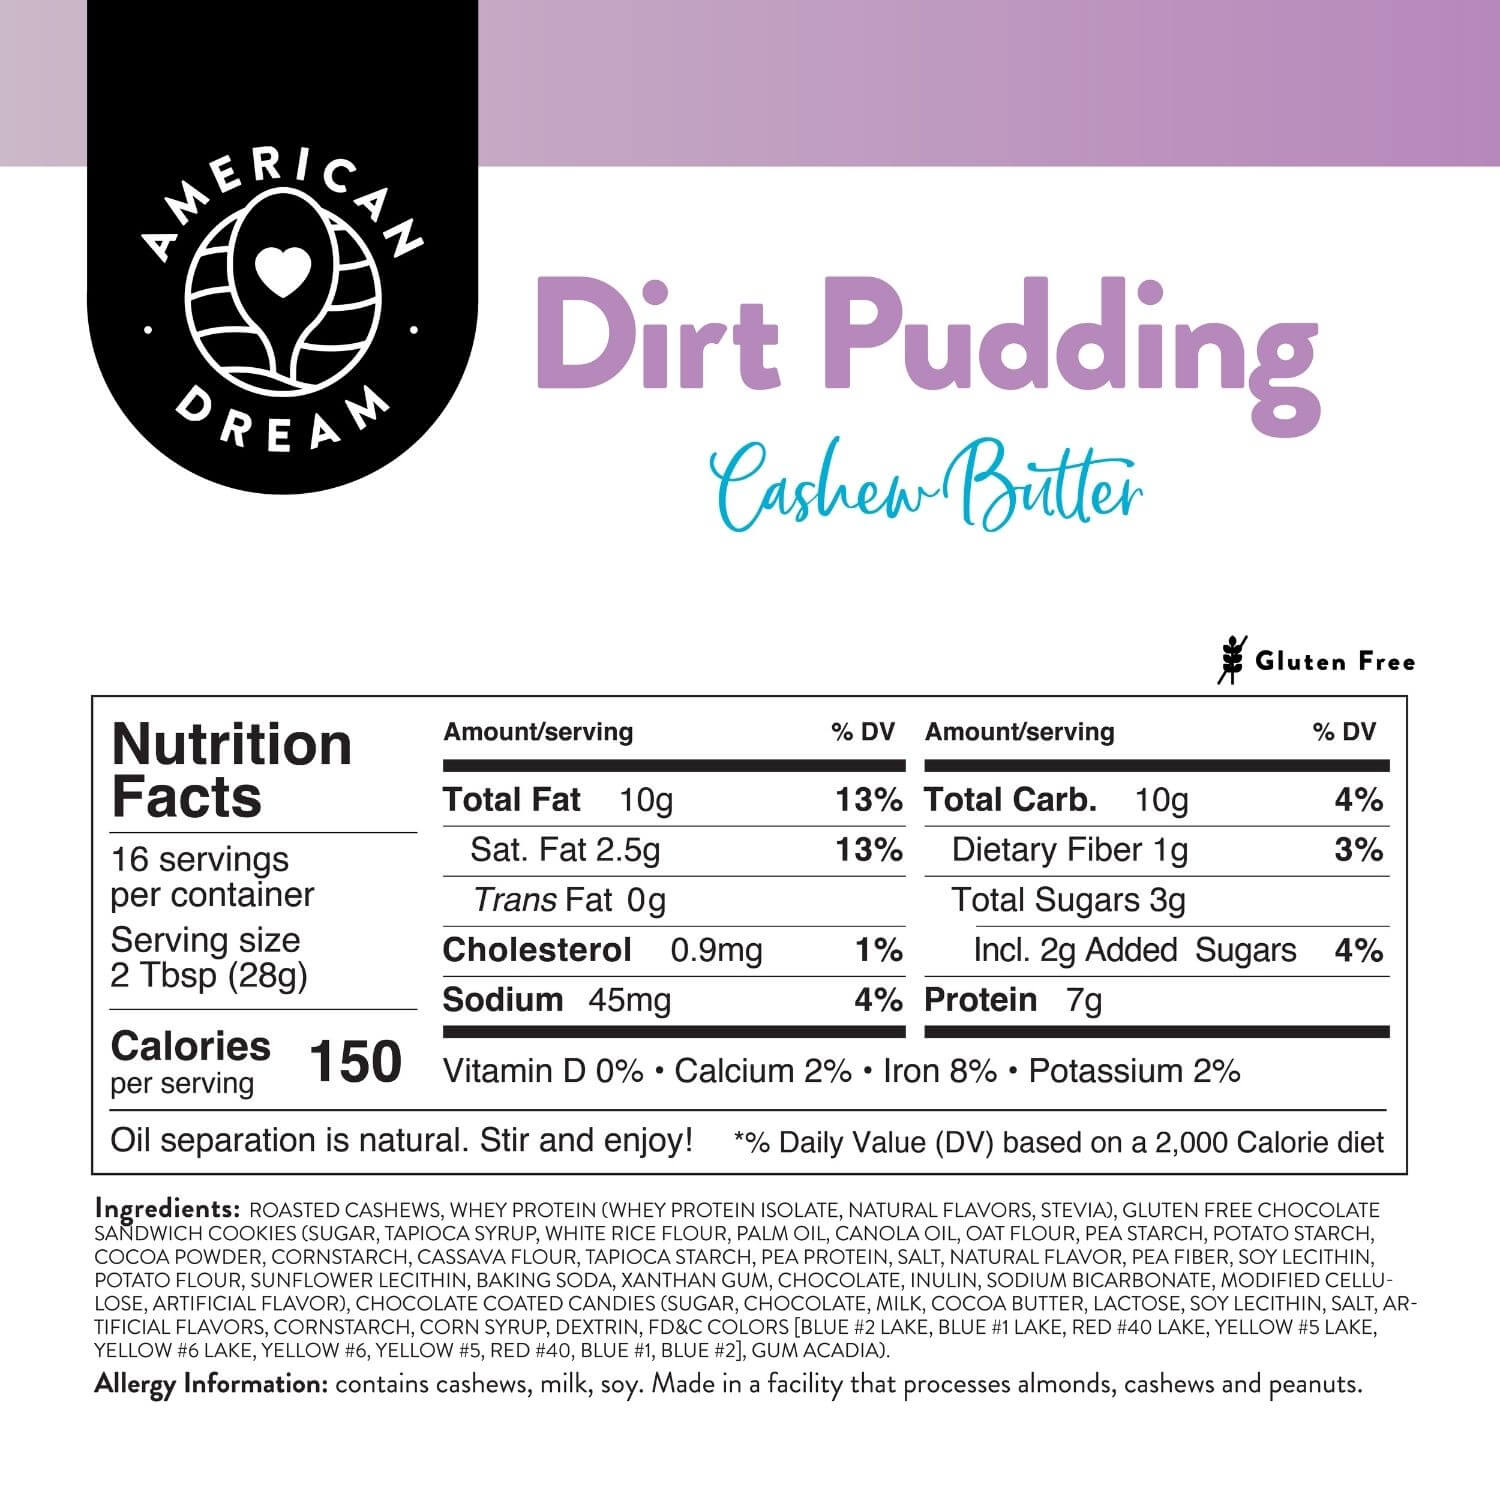 Gluten-Free Dirt Pudding Cashew Butter